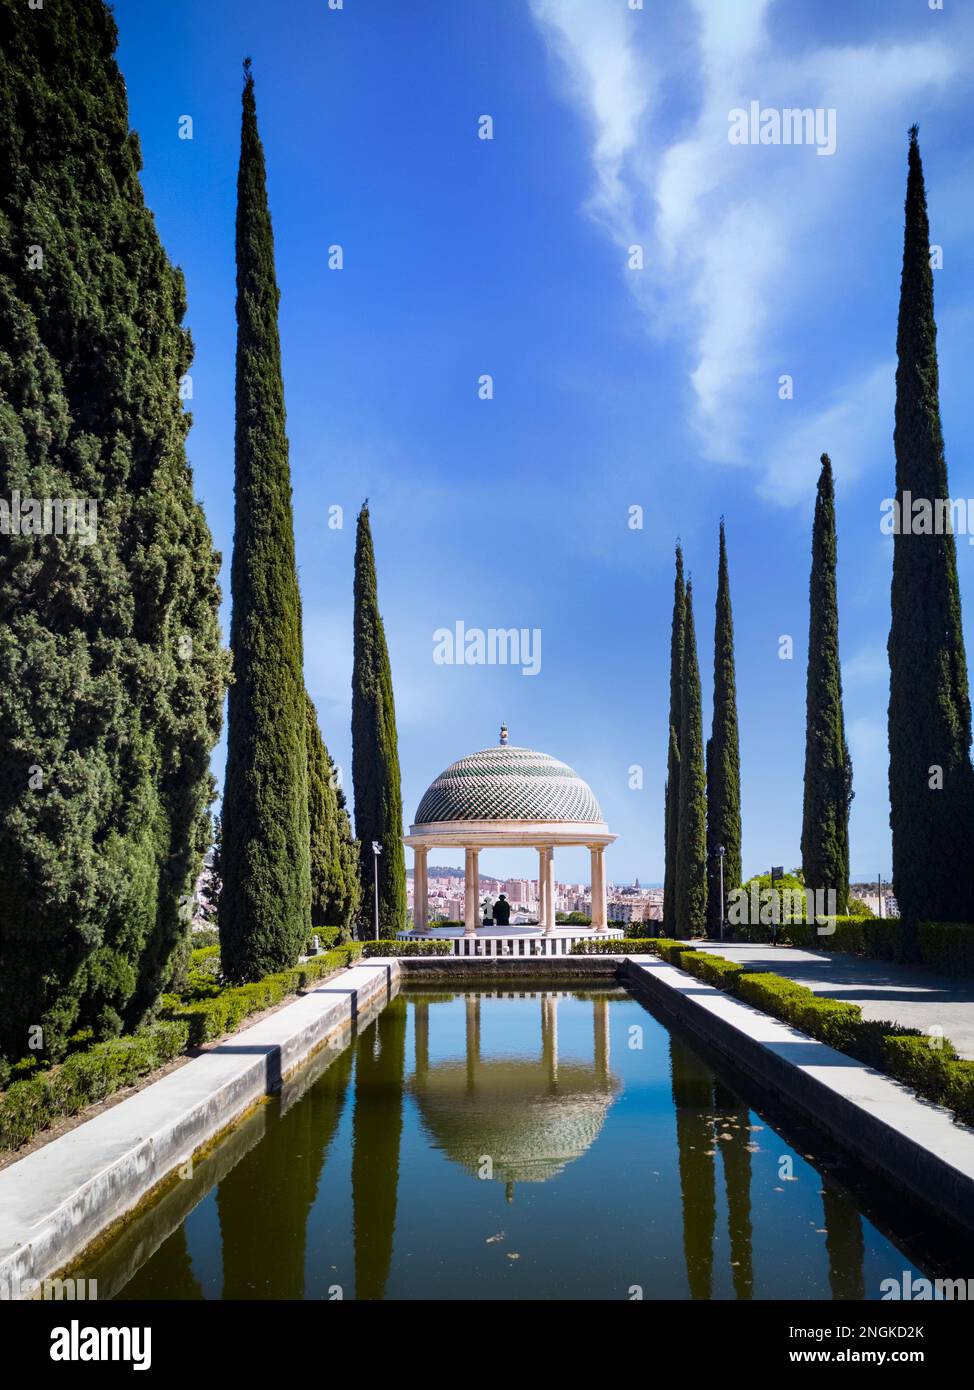 Le temple et la piscine dans le jardin botanique ou jardin Botanico de la Concepcion, Malaga, Andalousie, Espagne. Banque D'Images